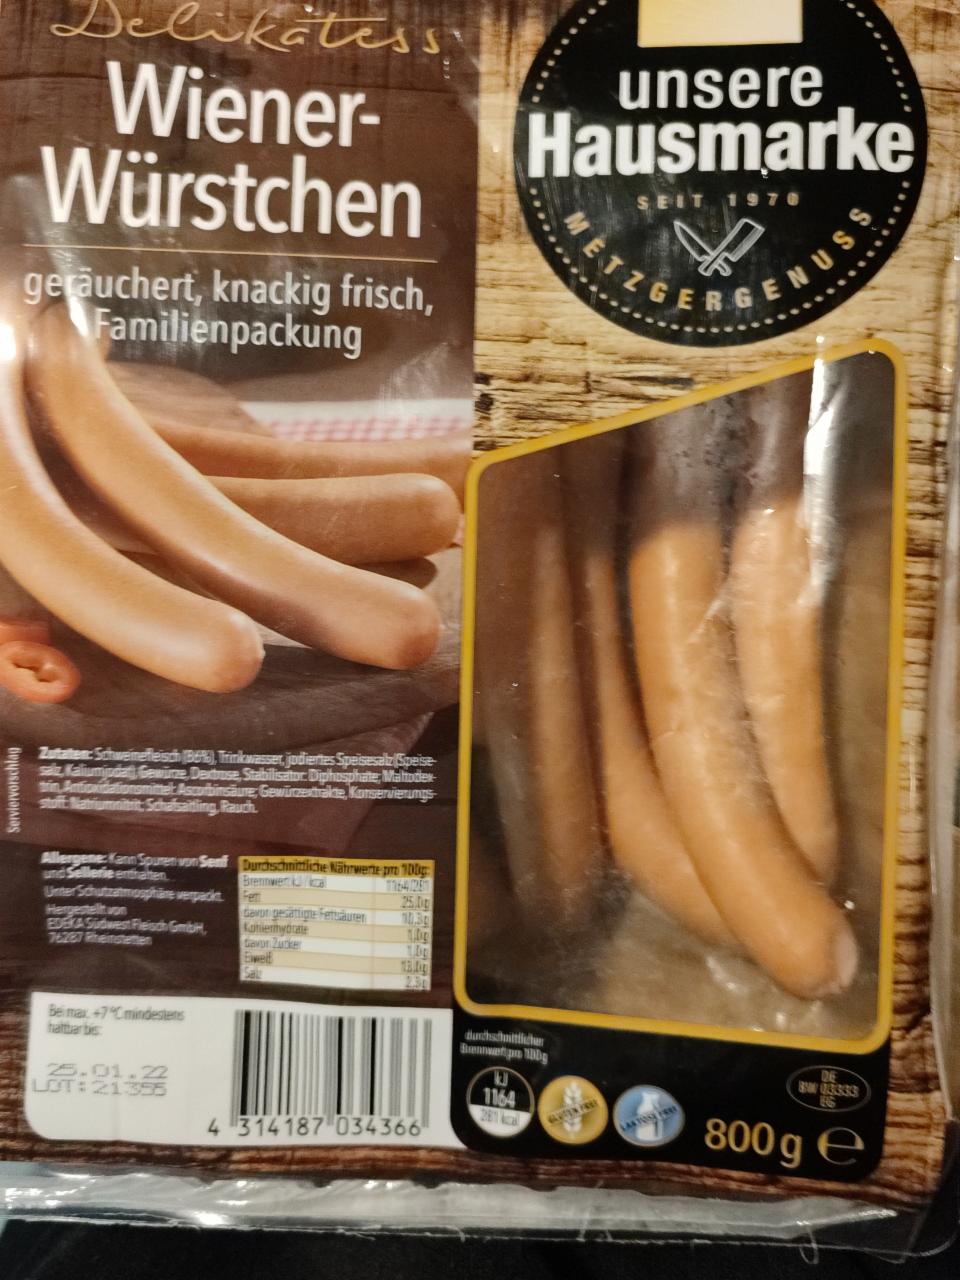 Фото - Венские колбаски Delikatess Wiener Würstchen Edeka